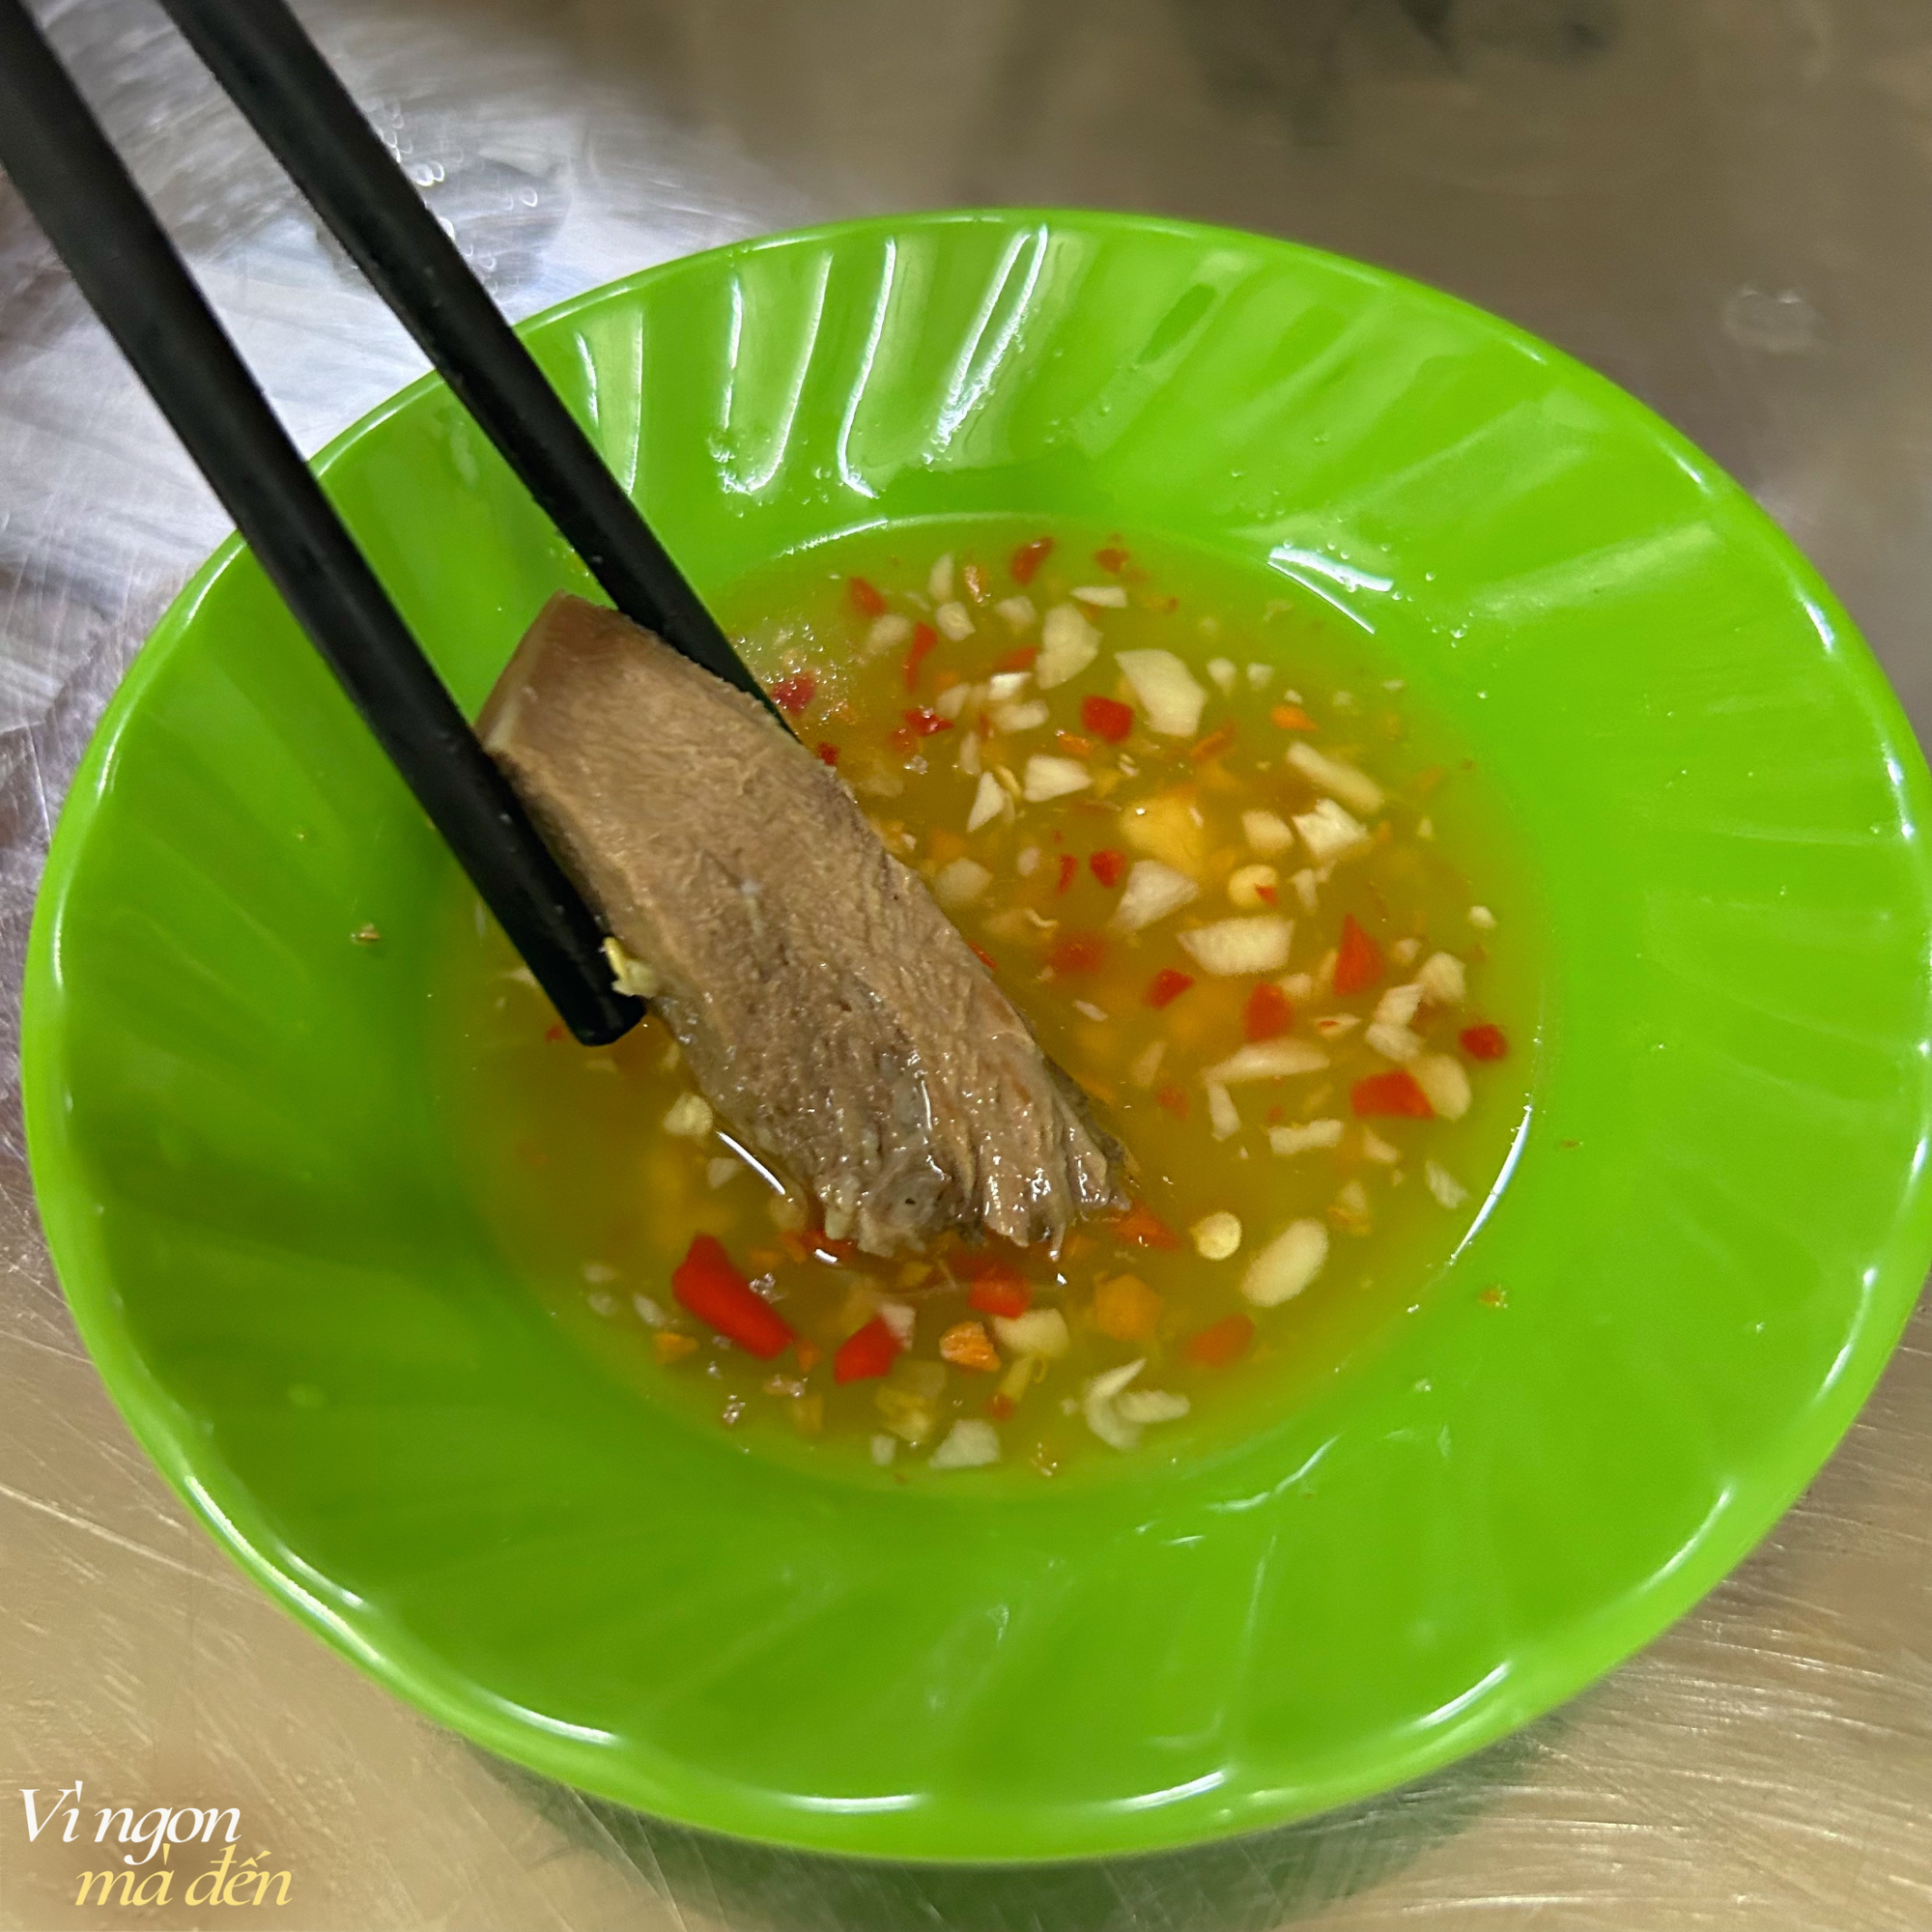 Tiệm cơm nhà người Hoa nức tiếng qua 3 thế hệ: Món phá lấu gây ấn tượng vì nấu với cải chua, mâm cơm có điểm đặc biệt ai mới ăn cũng thắc mắc- Ảnh 18.